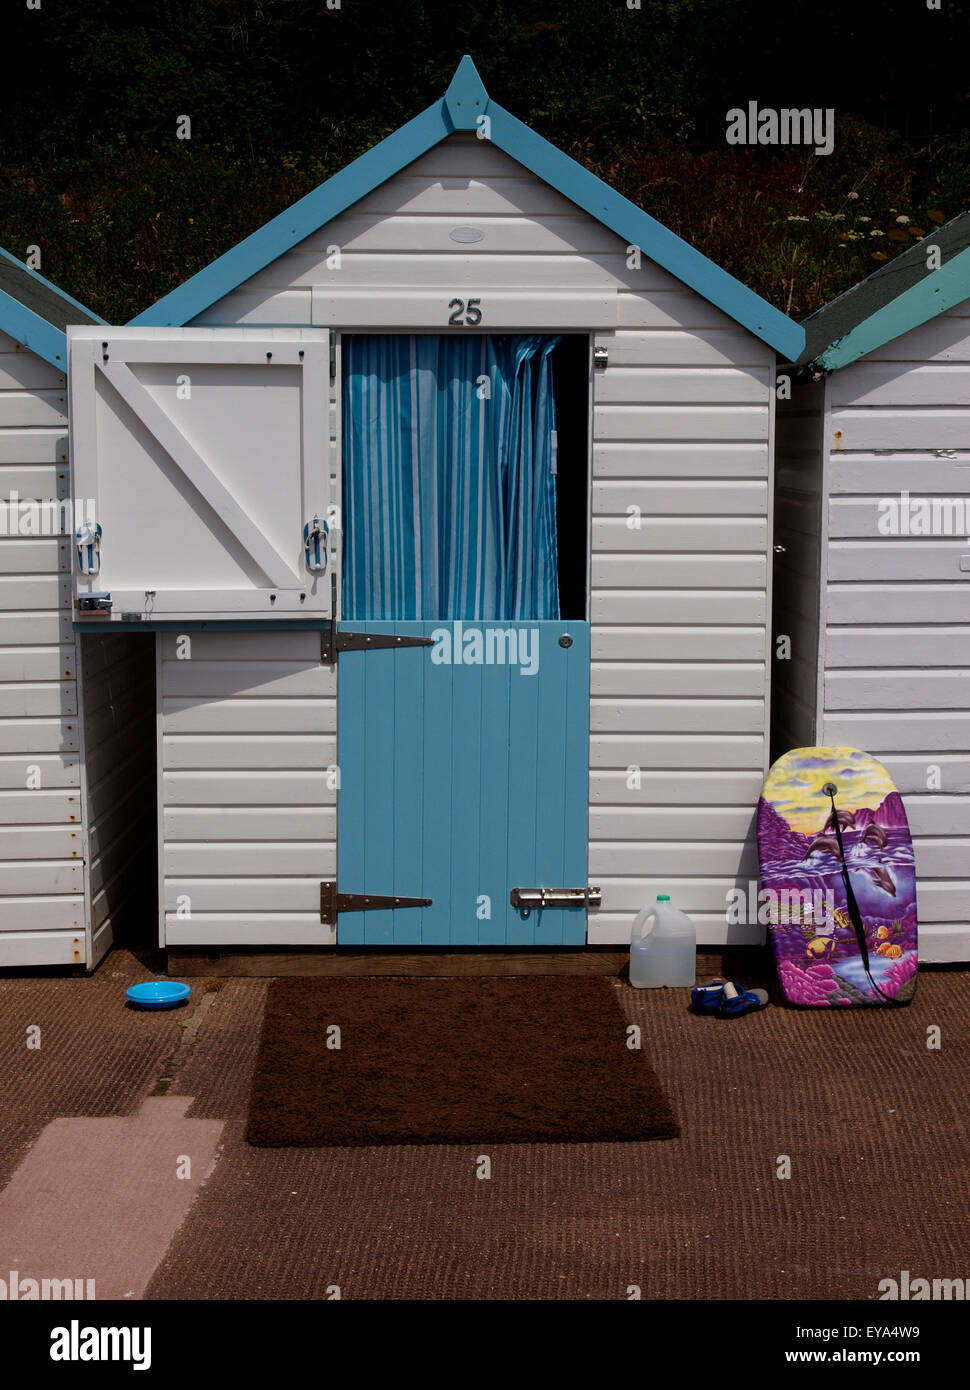 Cabane de plage de Goodrington Sands, Paignton, Devon, UK Banque D'Images